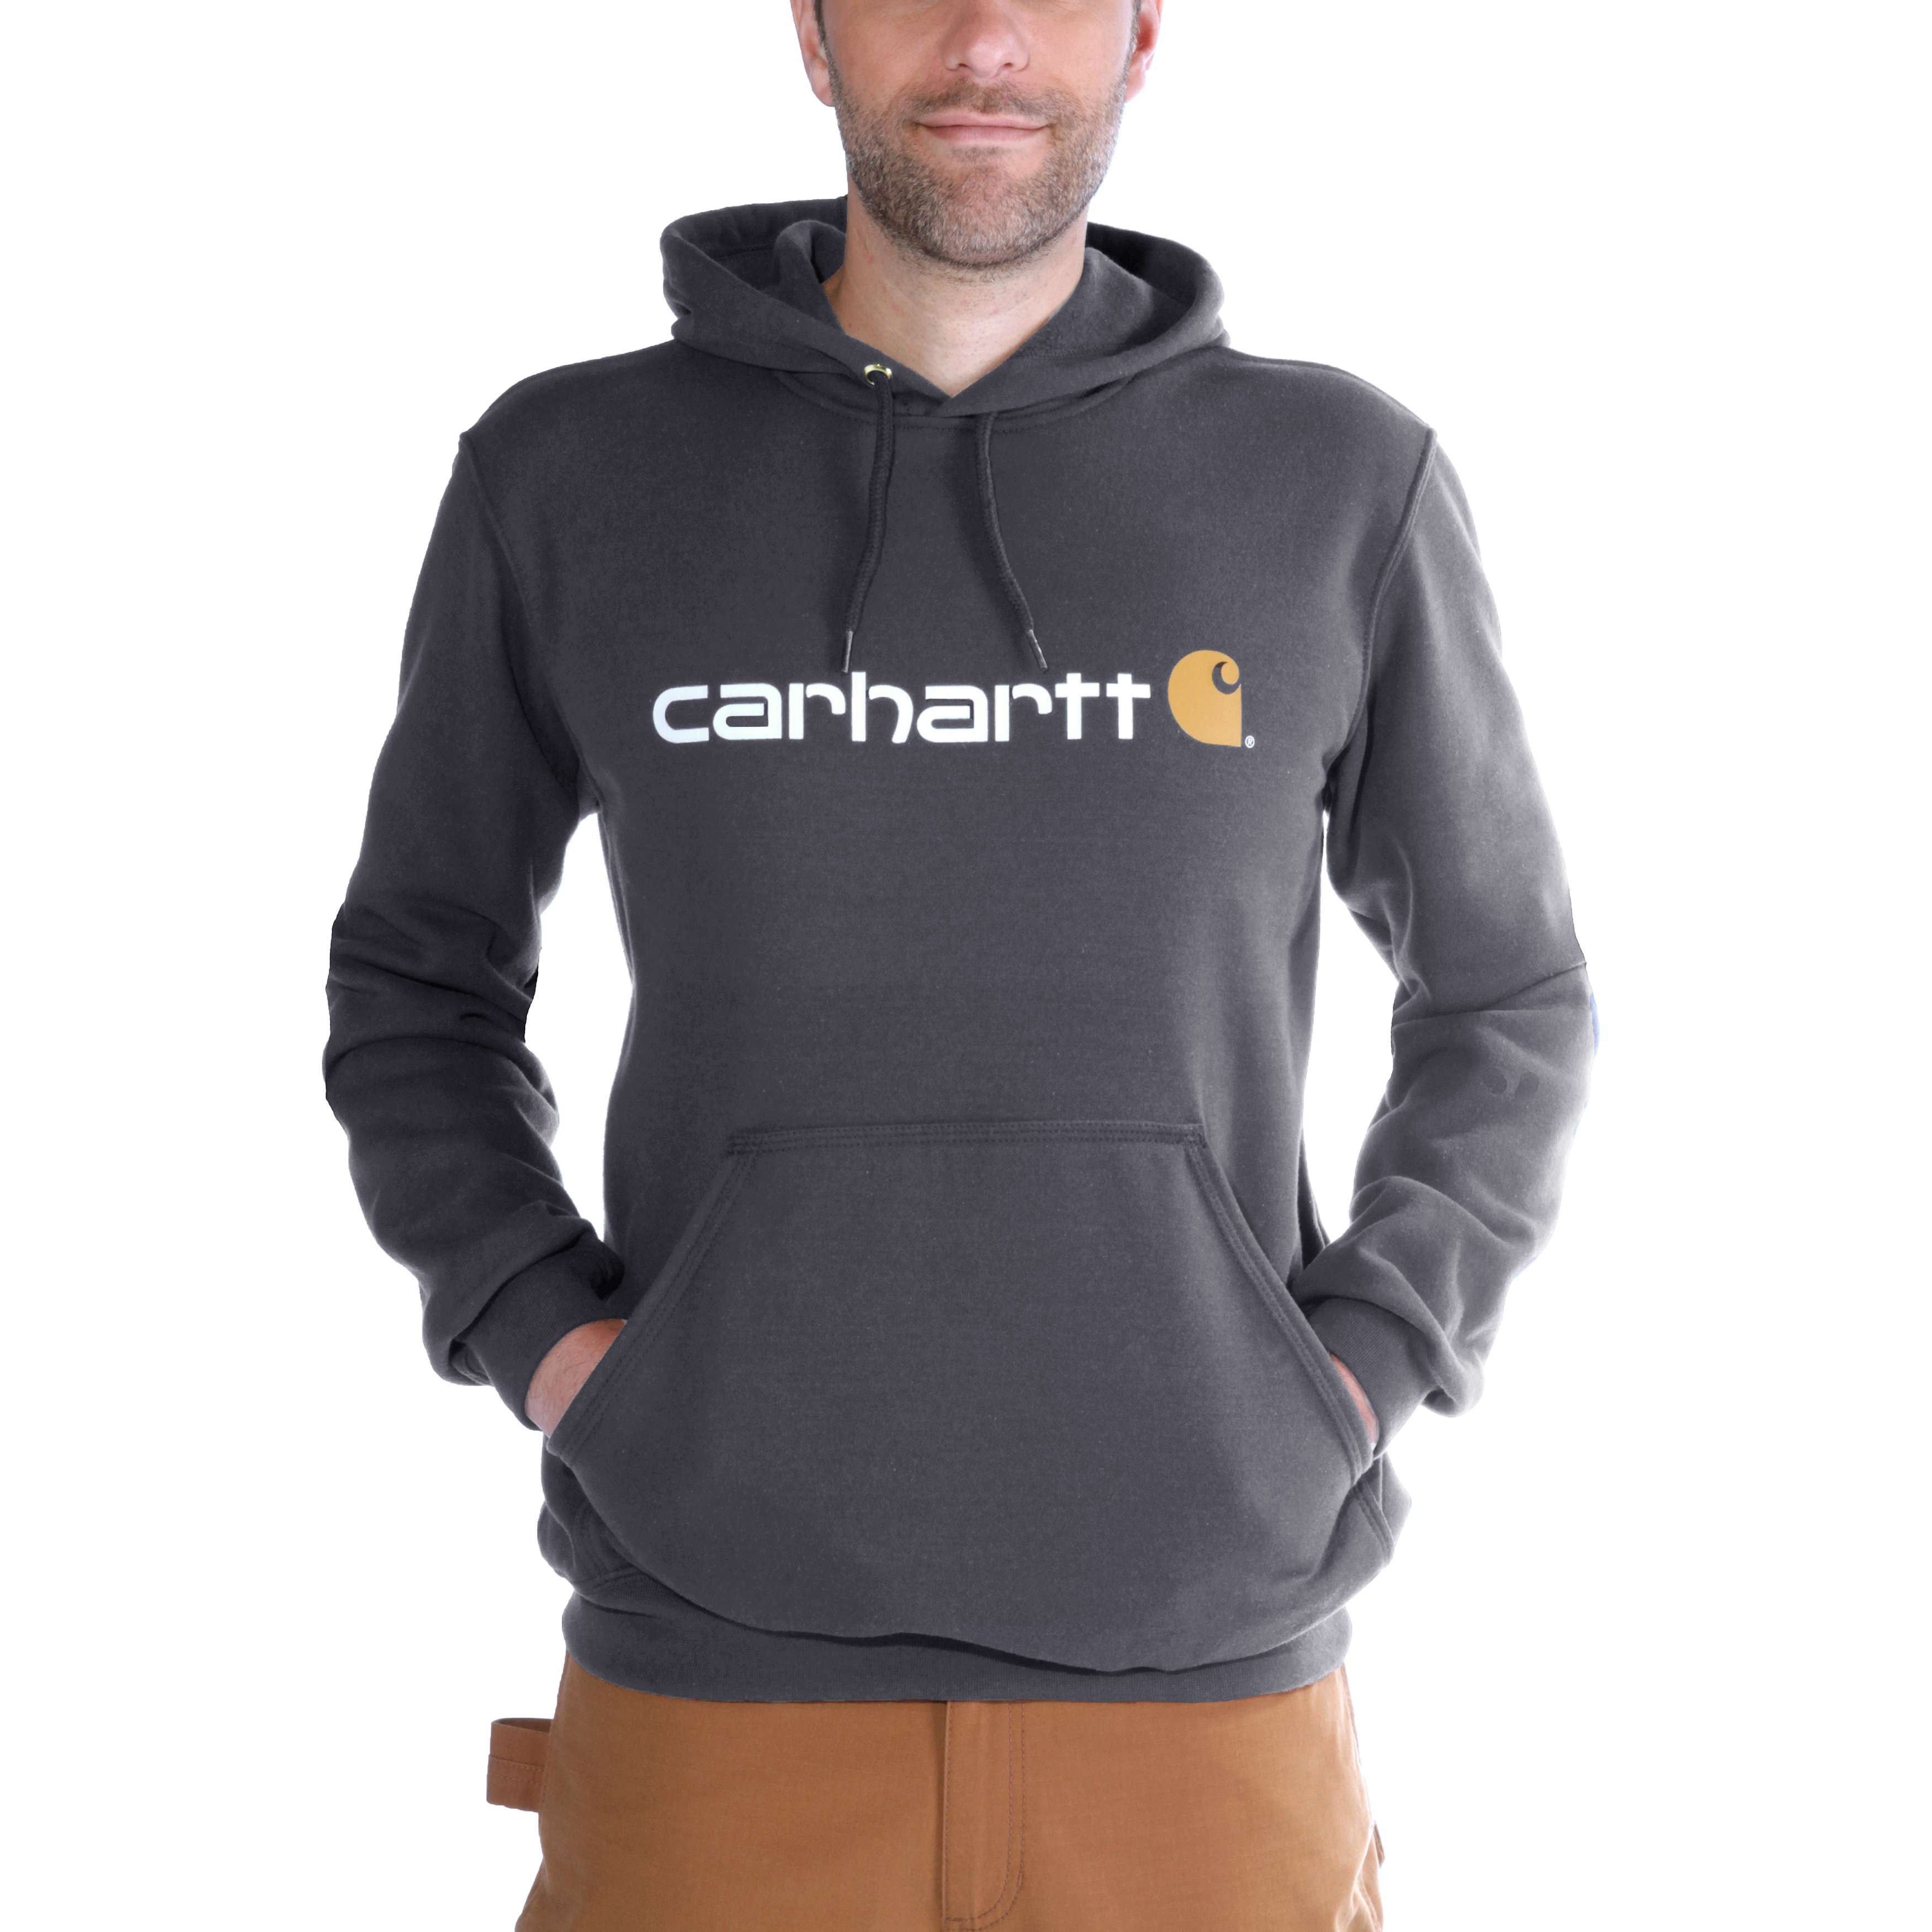 Carhartt Hoodies - Loose fit herensweater met capuchon en carhartt-logo Grijs - XL